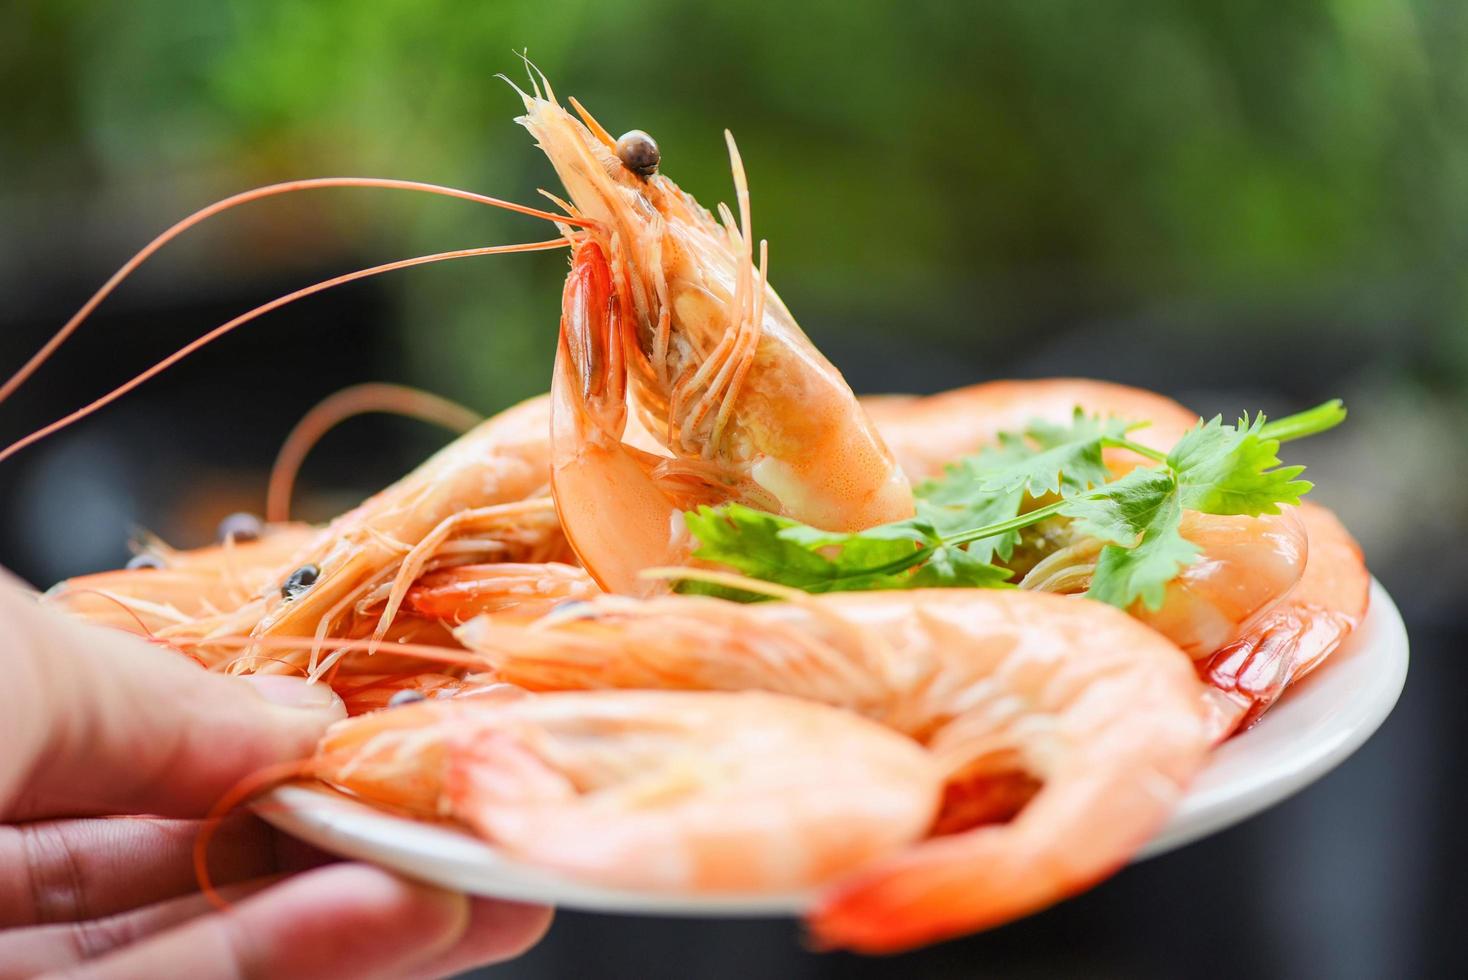 cuisine crevettes crevettes fruits de mer servis avec fond nature - crevettes fraîches sur une plaque blanche à la main avec des ingrédients coriandre aux herbes photo